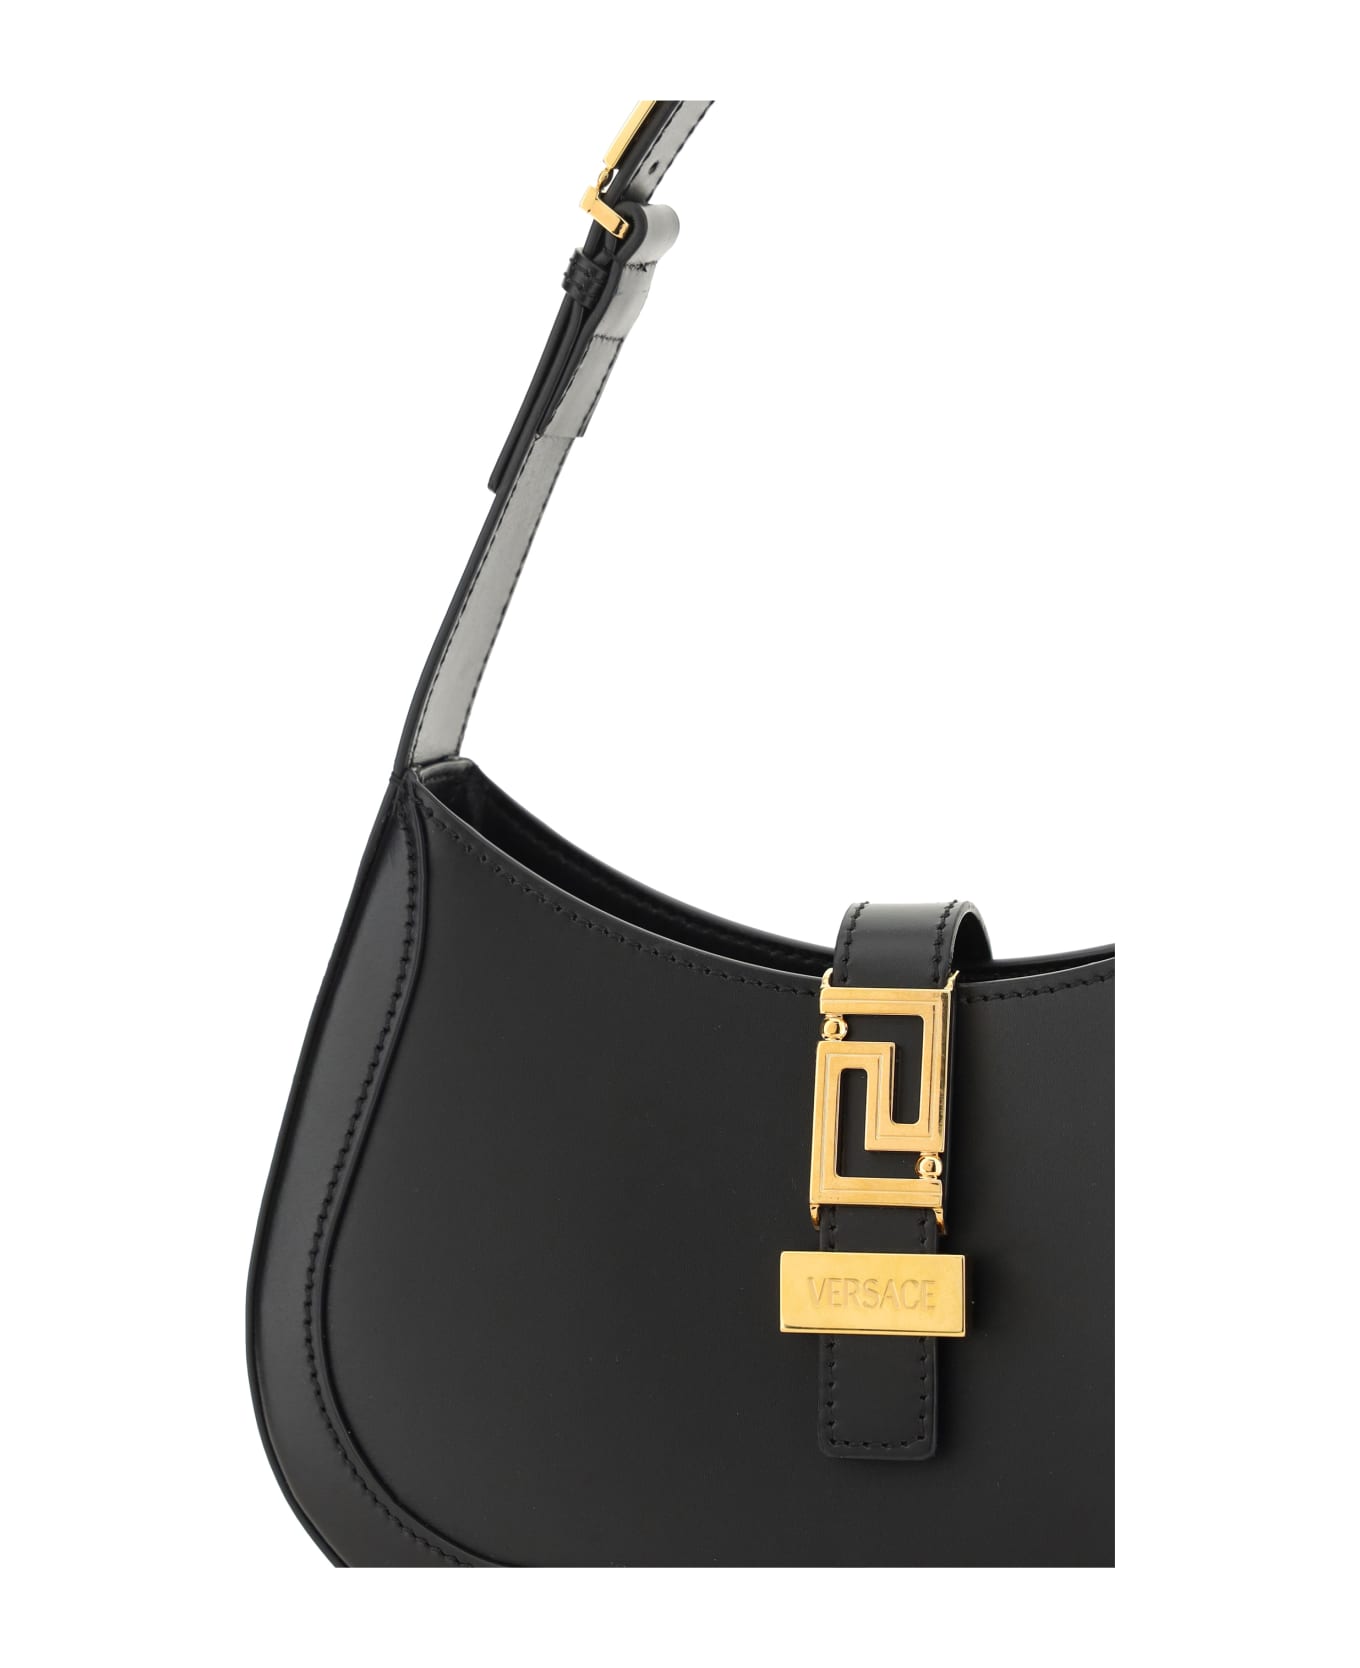 Versace Greca Goddess Handbags - BLACK